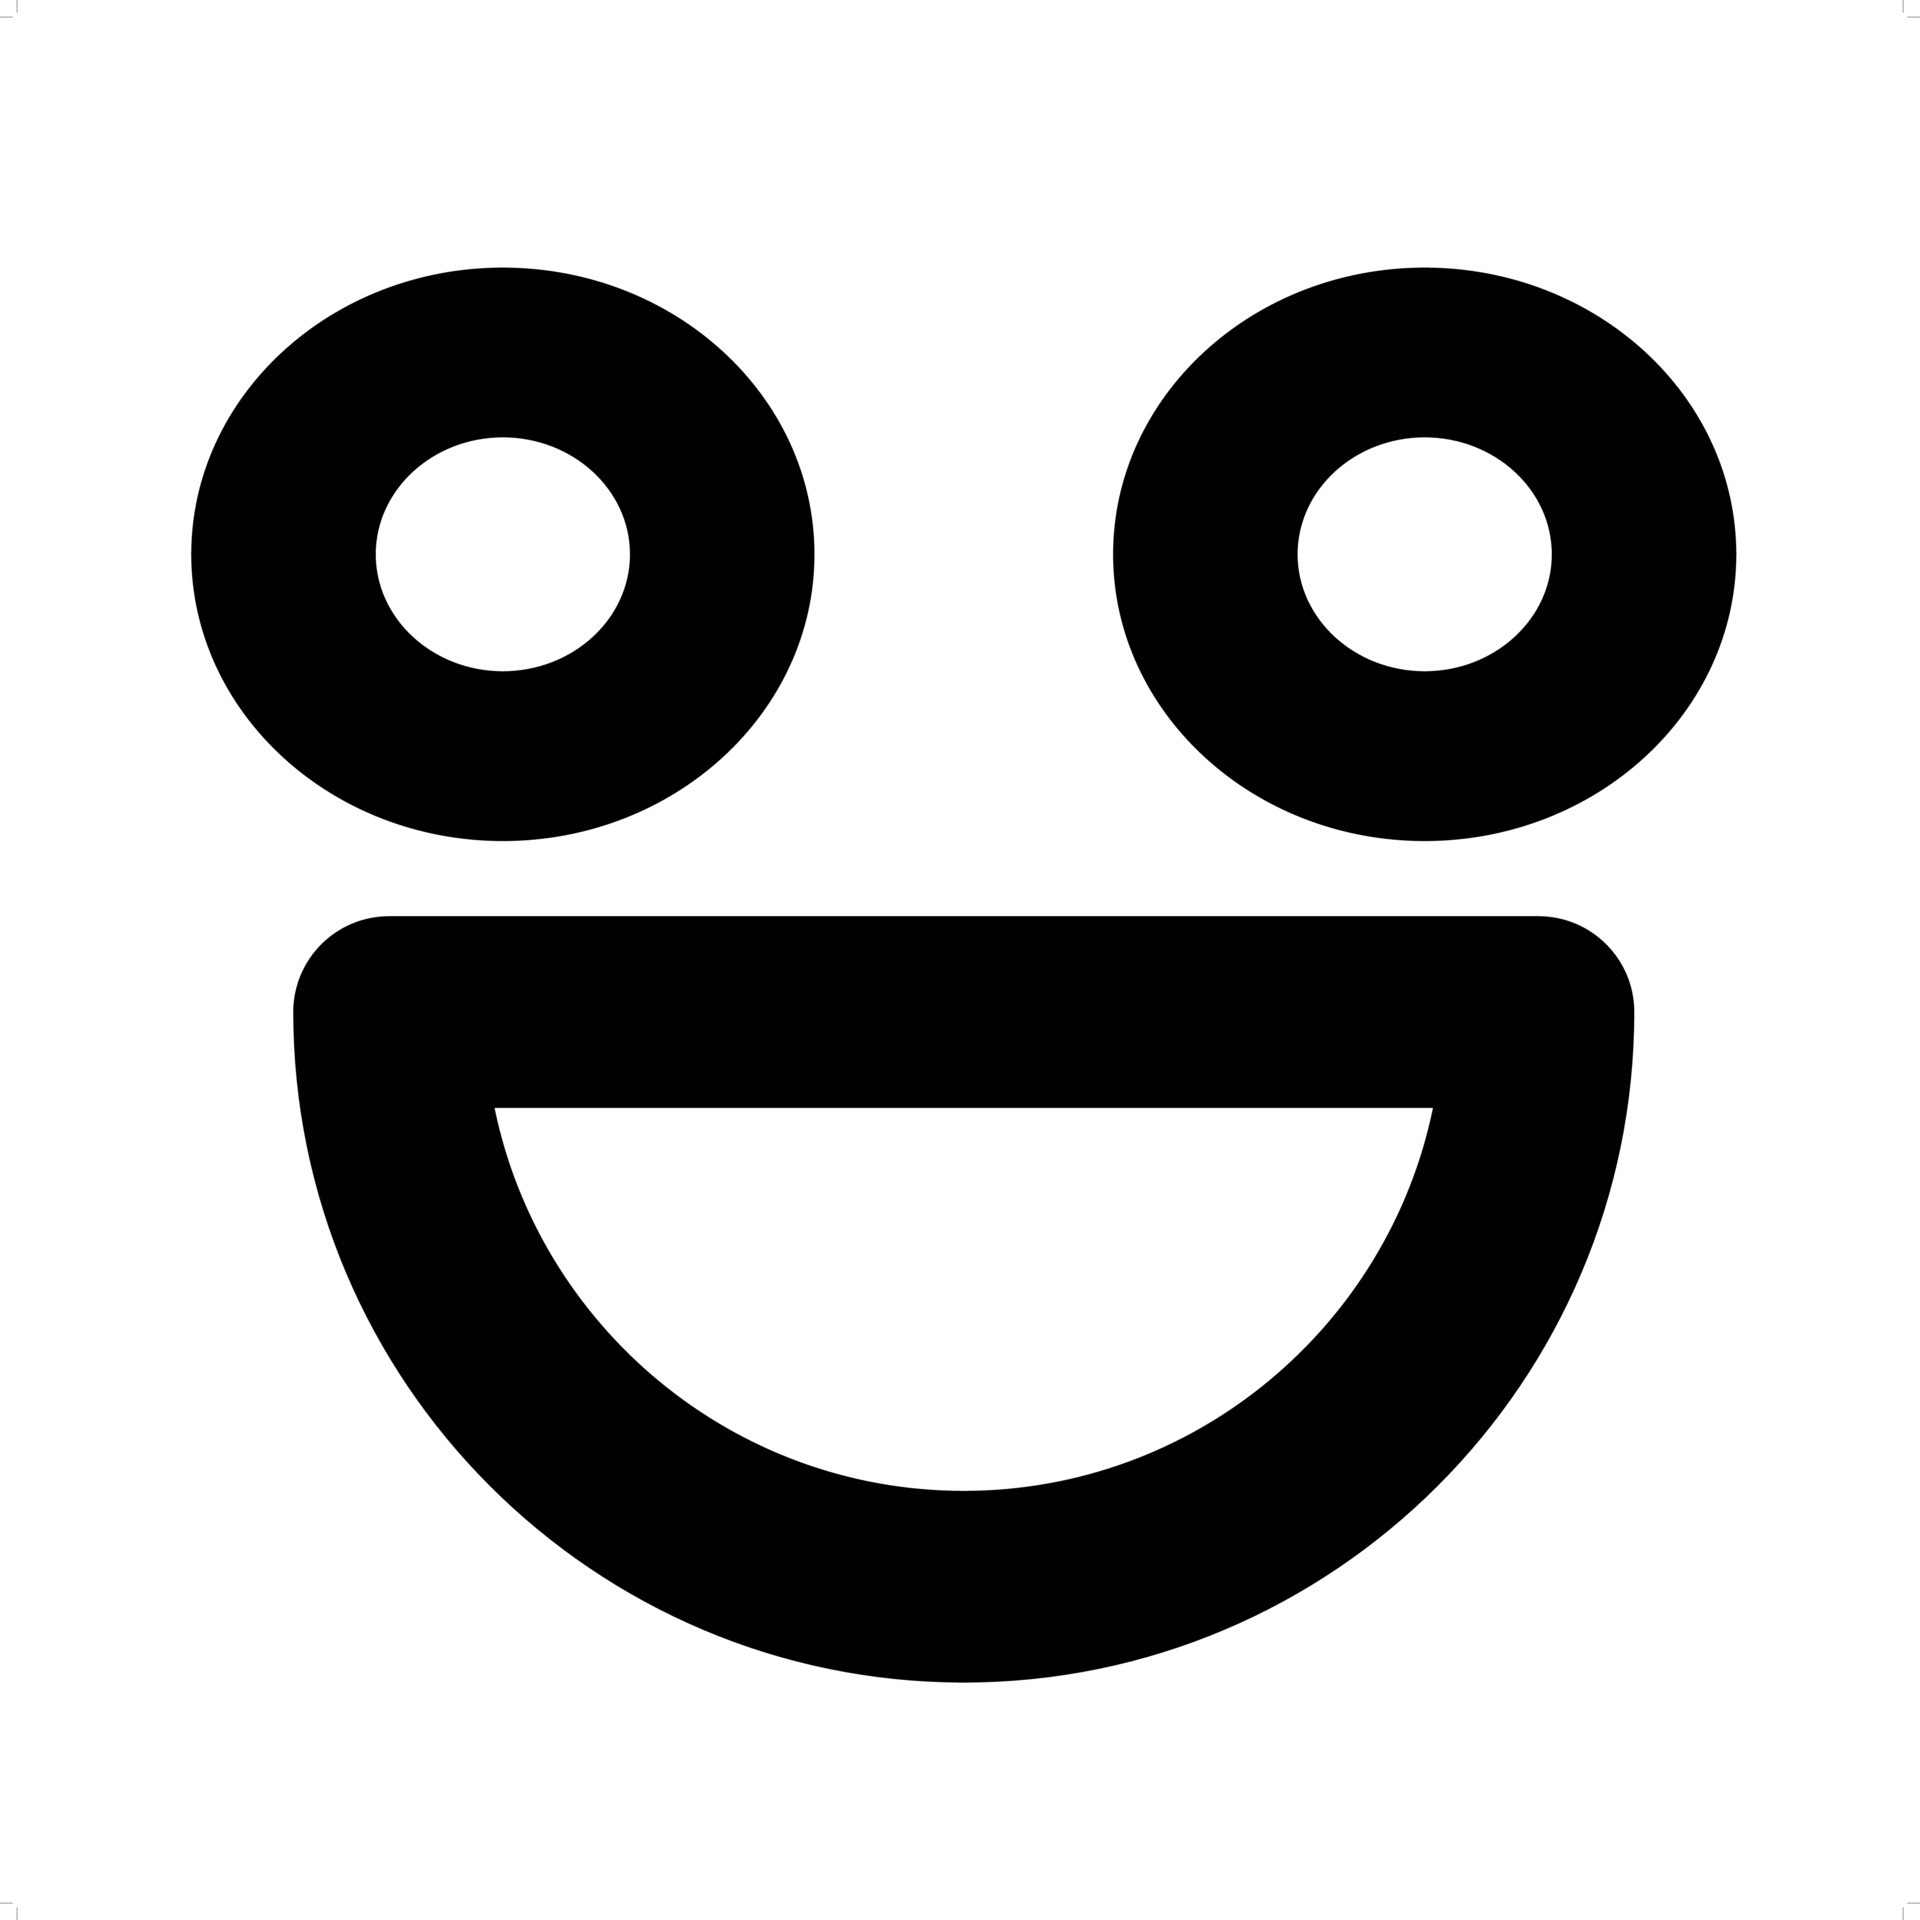 Super Happy Face - Roblox